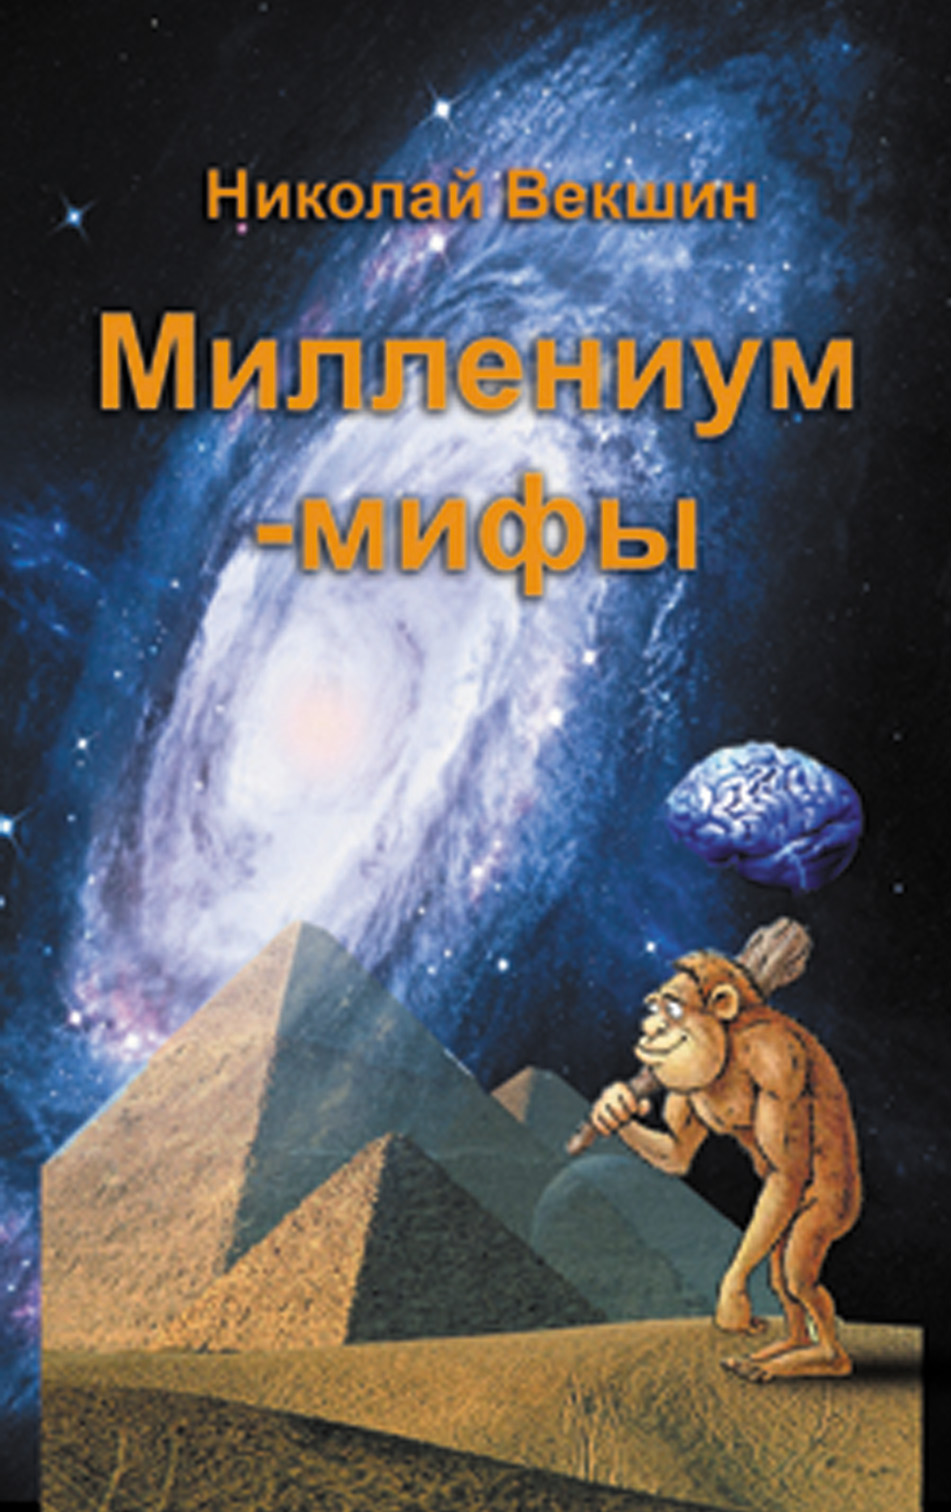 Книга Миллениум-мифы (сборник) из серии , созданная Николай Векшин, может относится к жанру Поэзия, Публицистика: прочее. Стоимость электронной книги Миллениум-мифы (сборник) с идентификатором 8219471 составляет 79.90 руб.